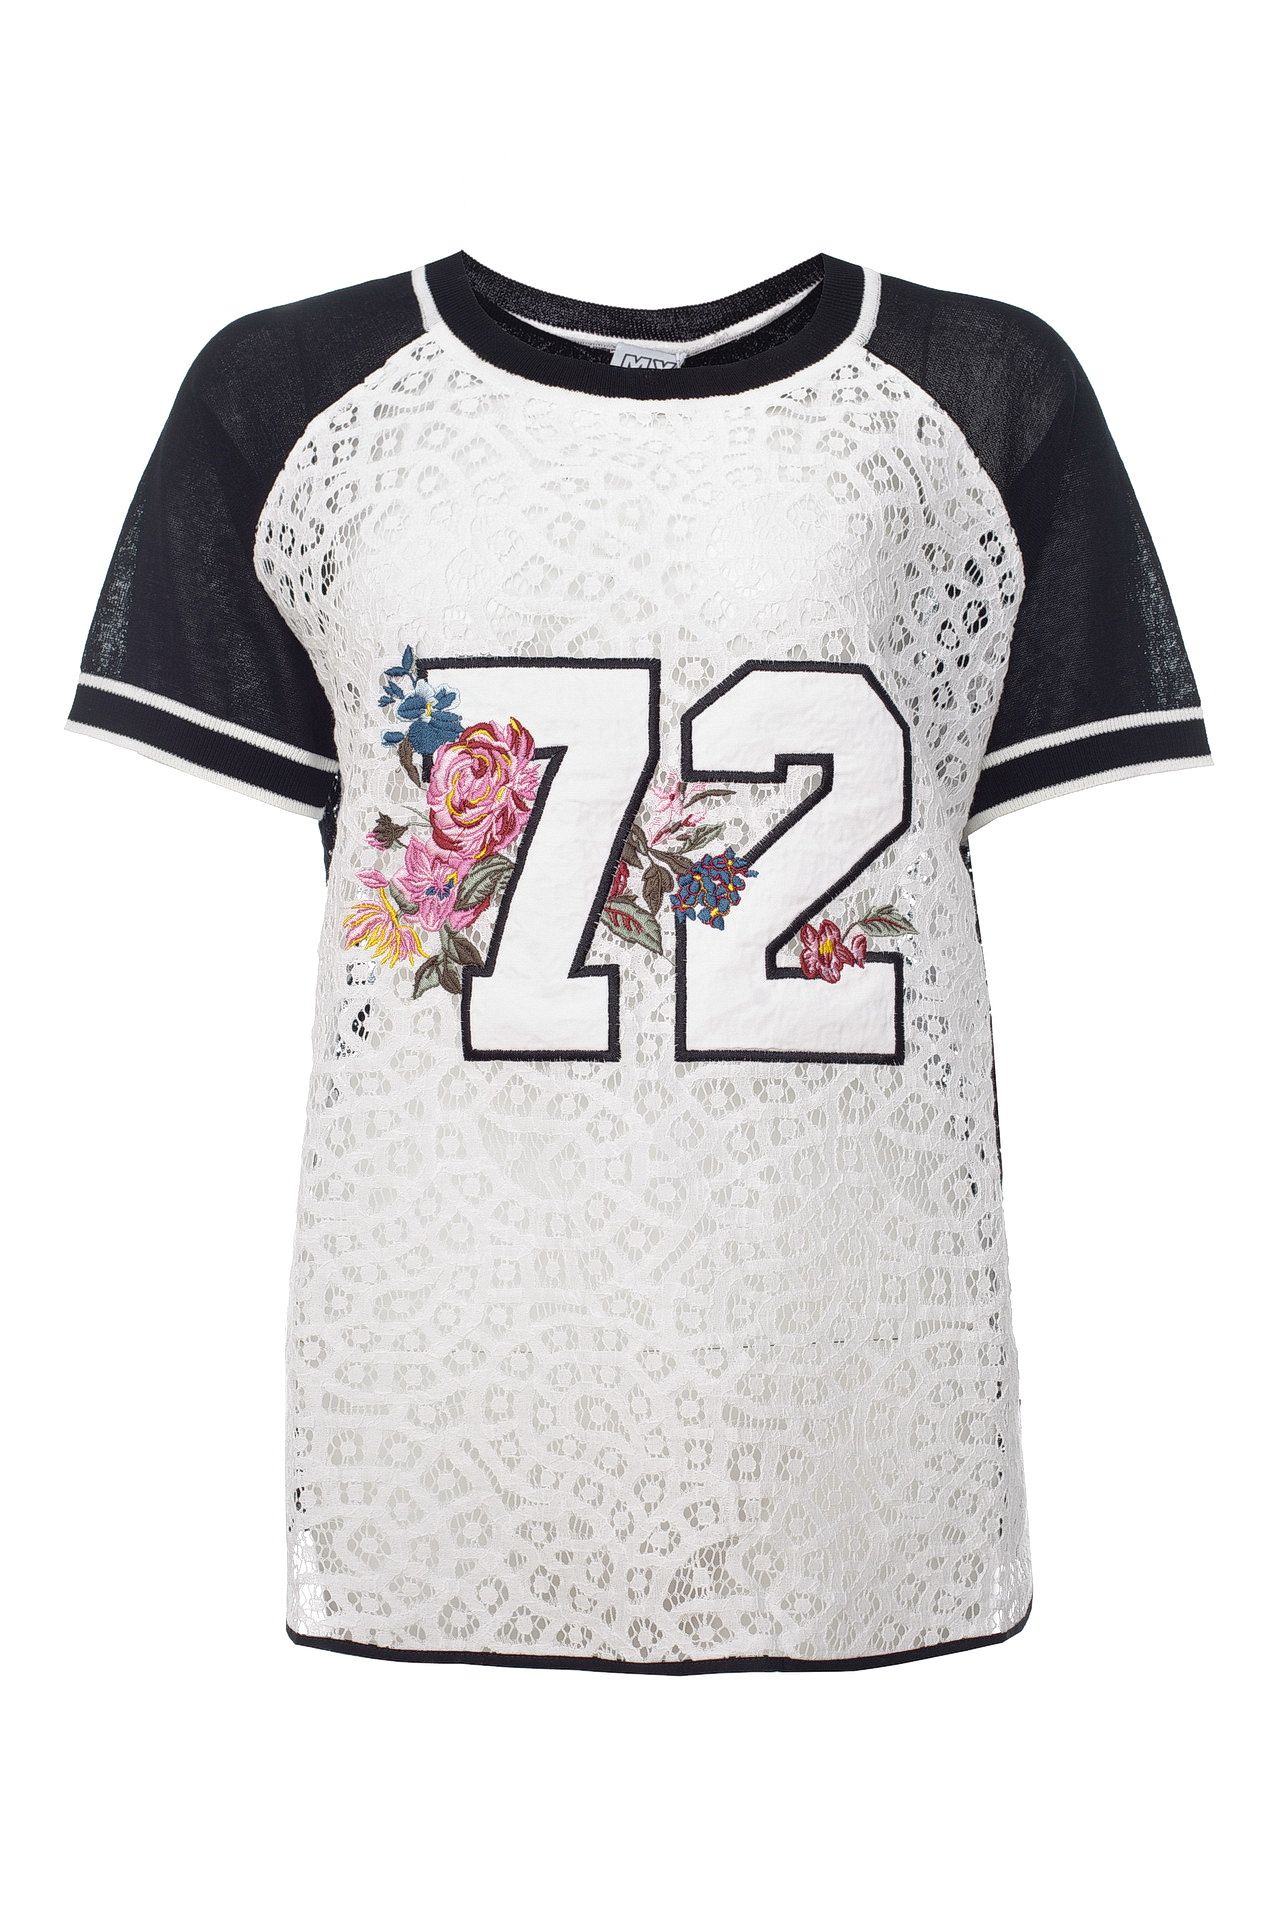 Одежда женская Футболка TWIN-SET (YS83DB/18.3). Купить за 7095 руб.